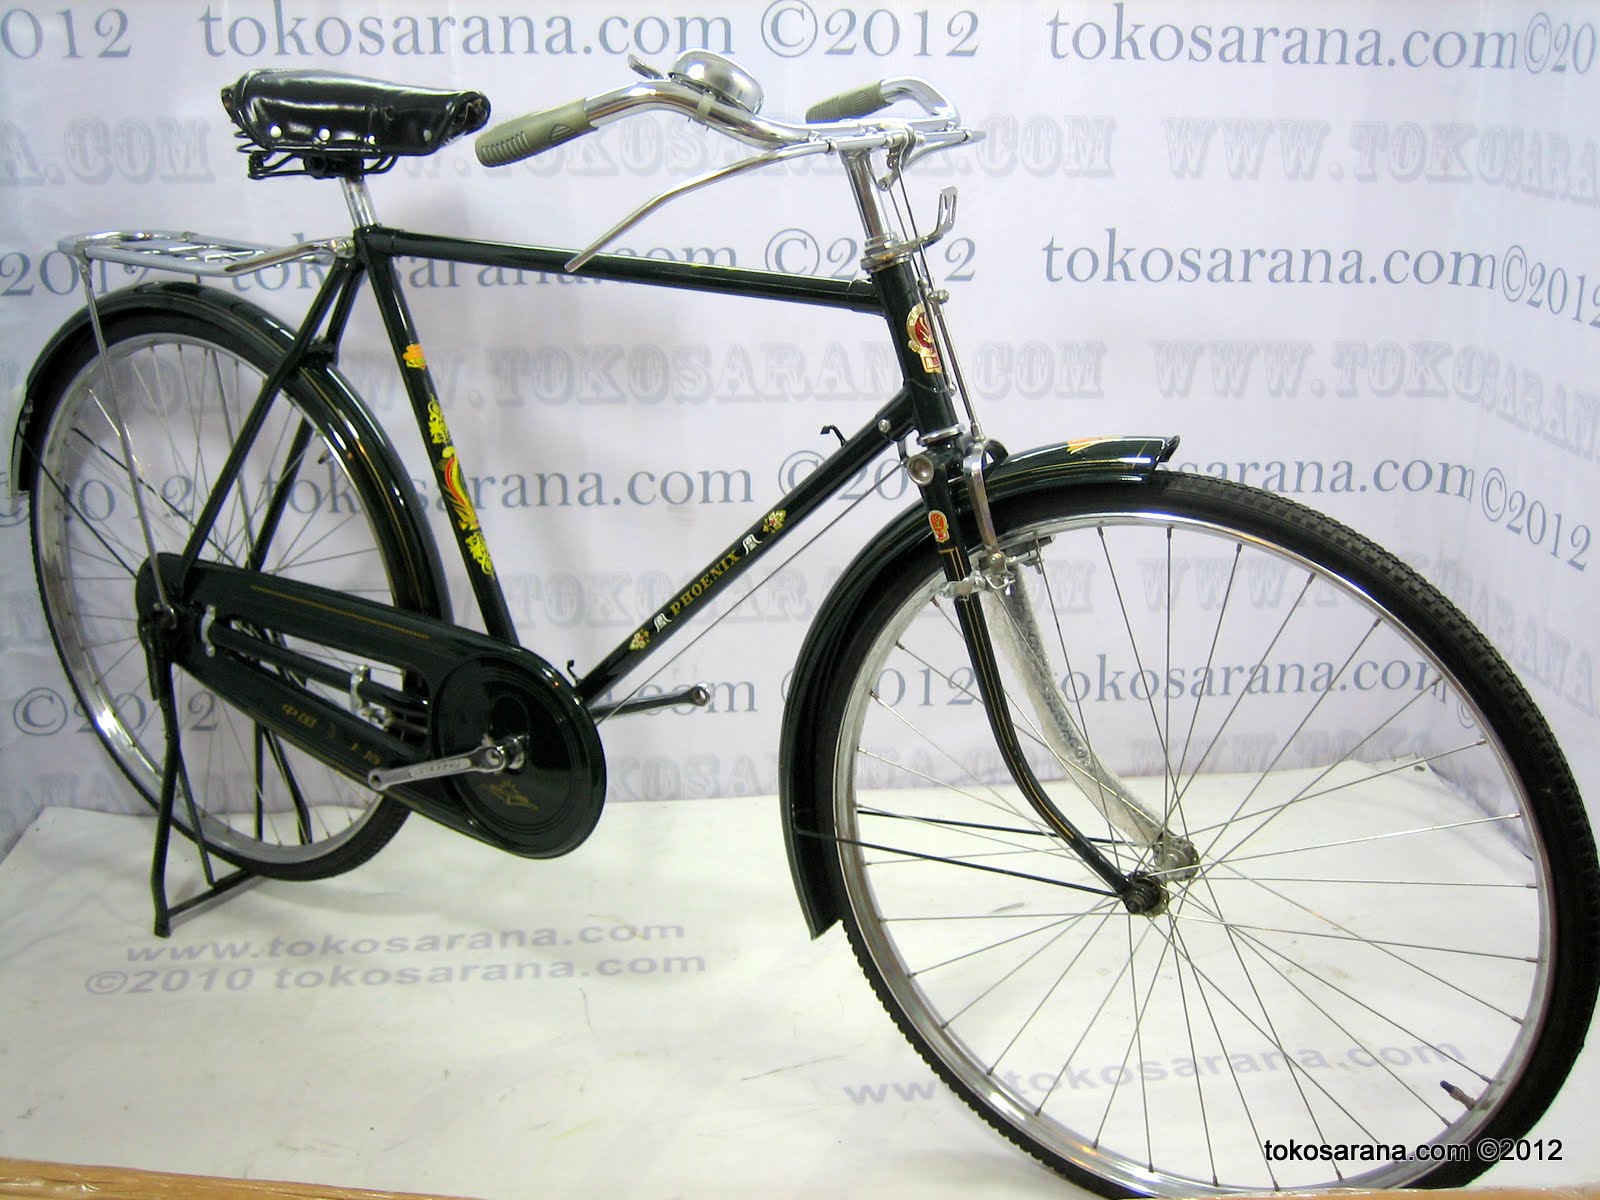 tokosarana Mahasarana Sukses Heavy-duty Bike PHOENIX 